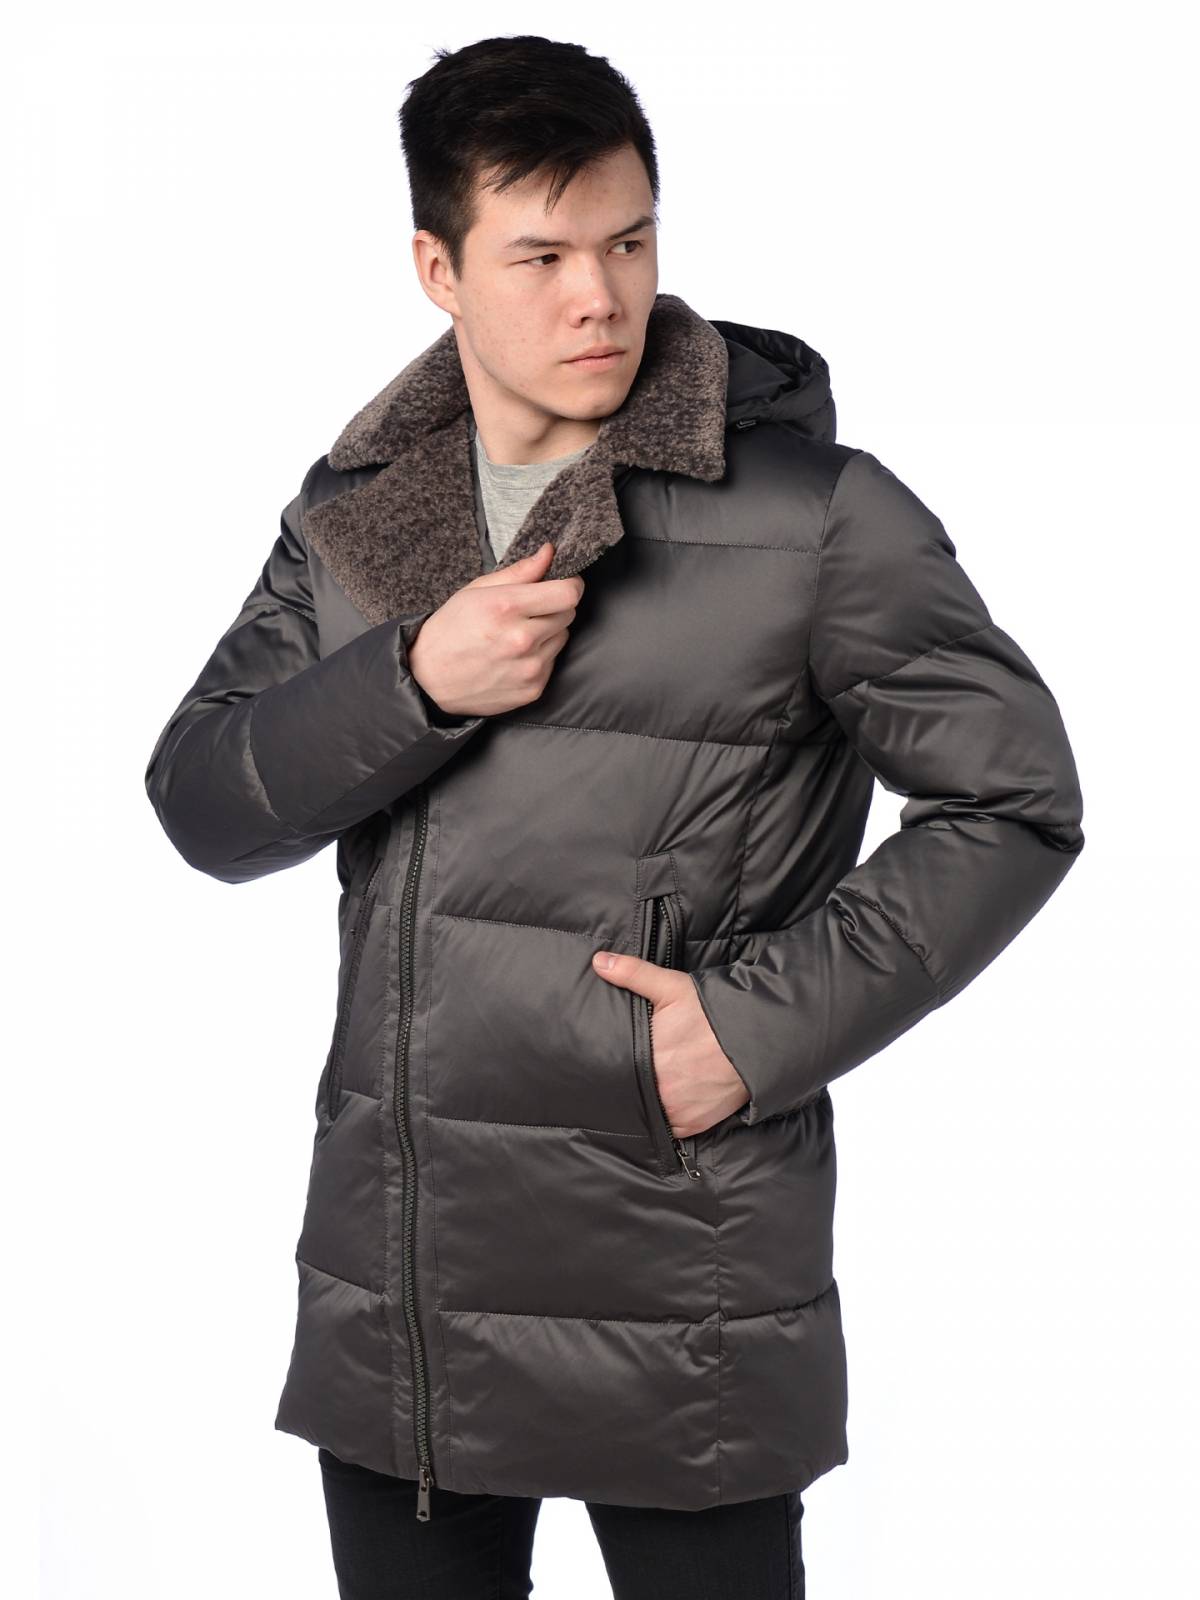 Зимняя куртка мужская Fanfaroni 3937 серая 54 RU